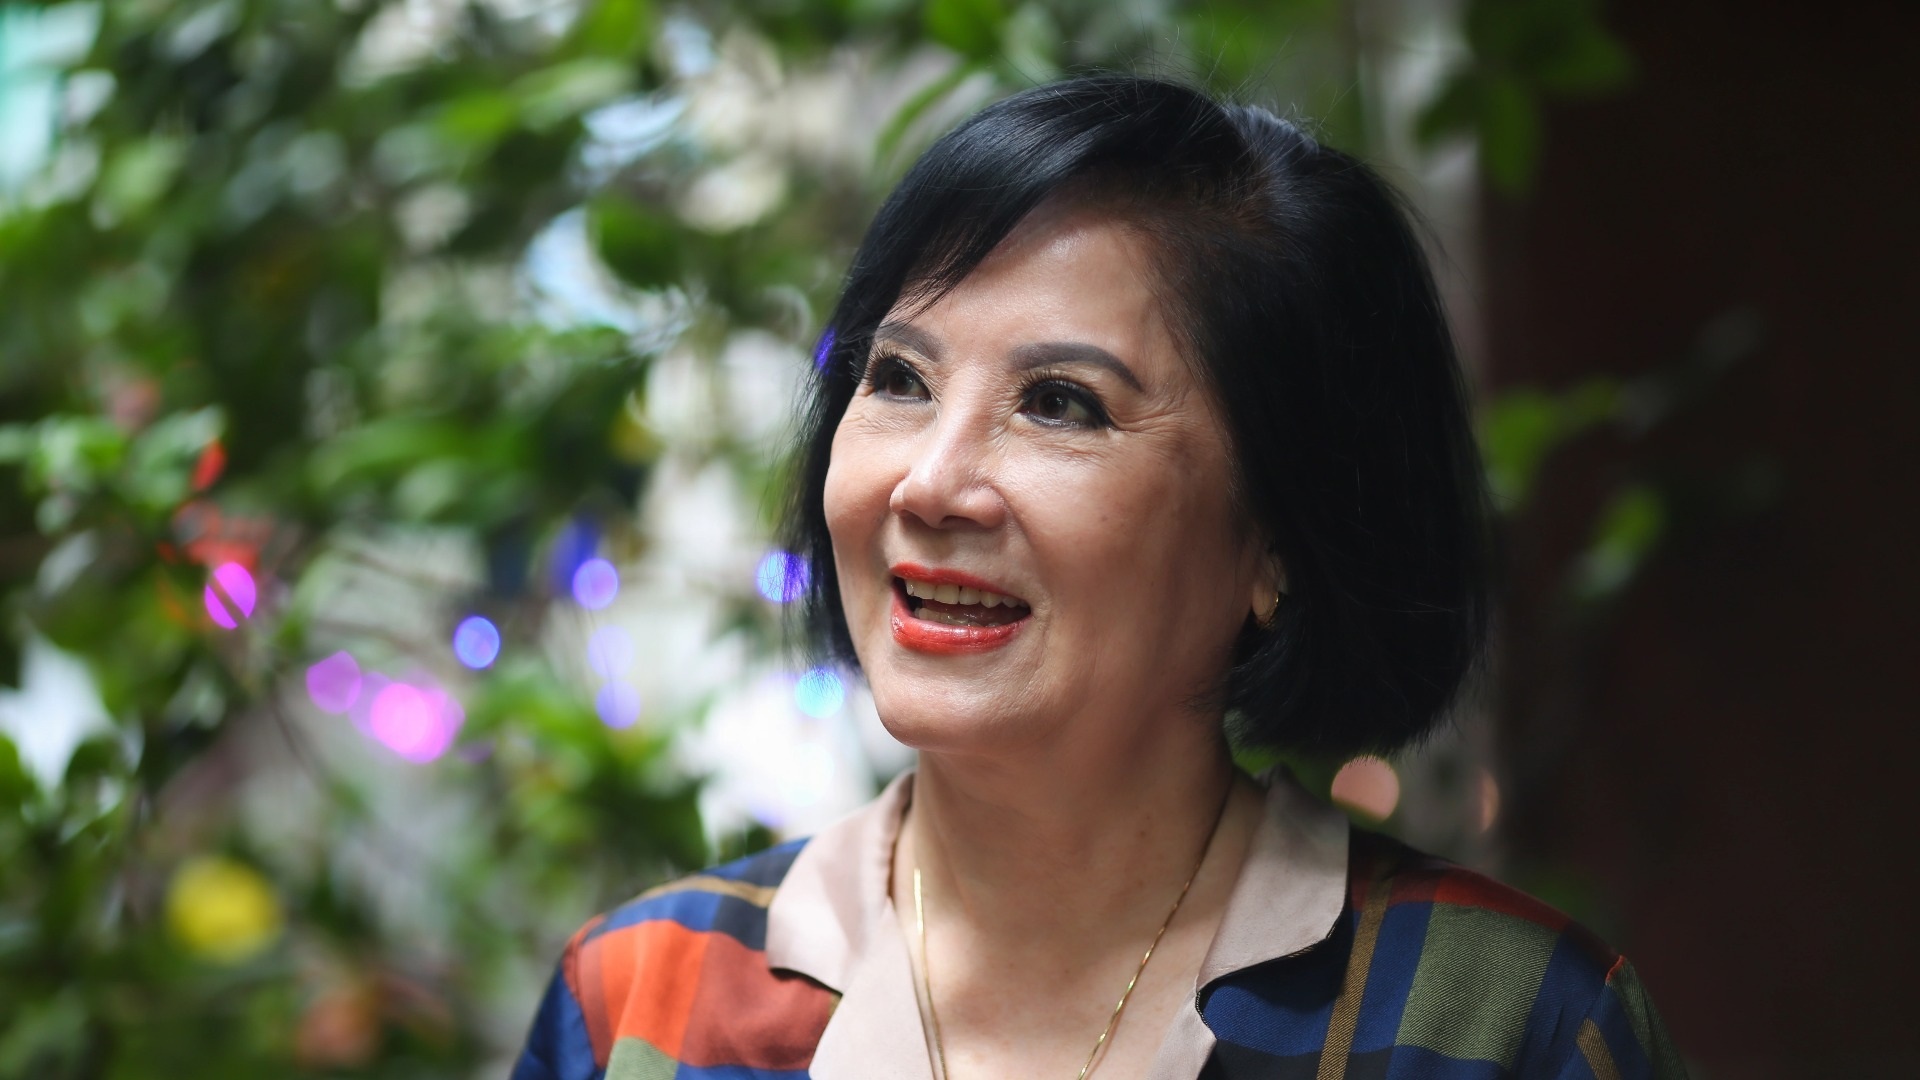 Mỹ nhân nức tiếng Sài Gòn xưa - Mộng Tuyền: "75 tuổi, tôi lấy ai bây giờ?"